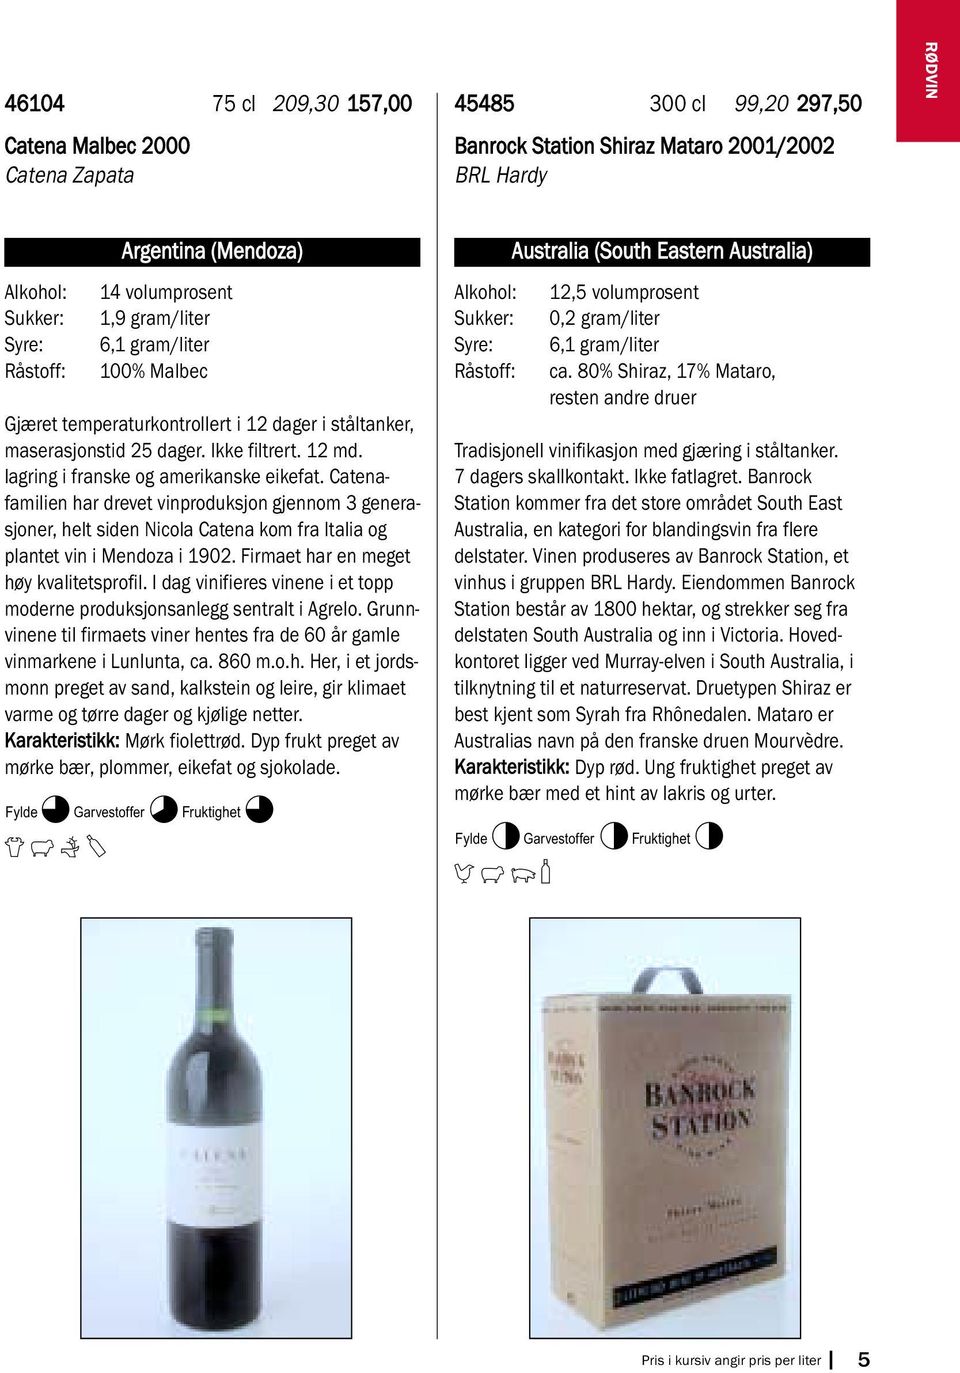 Catenafamilien har drevet vinproduksjon gjennom 3 generasjoner, helt siden Nicola Catena kom fra Italia og plantet vin i Mendoza i 1902. Firmaet har en meget høy kvalitetsprofil.